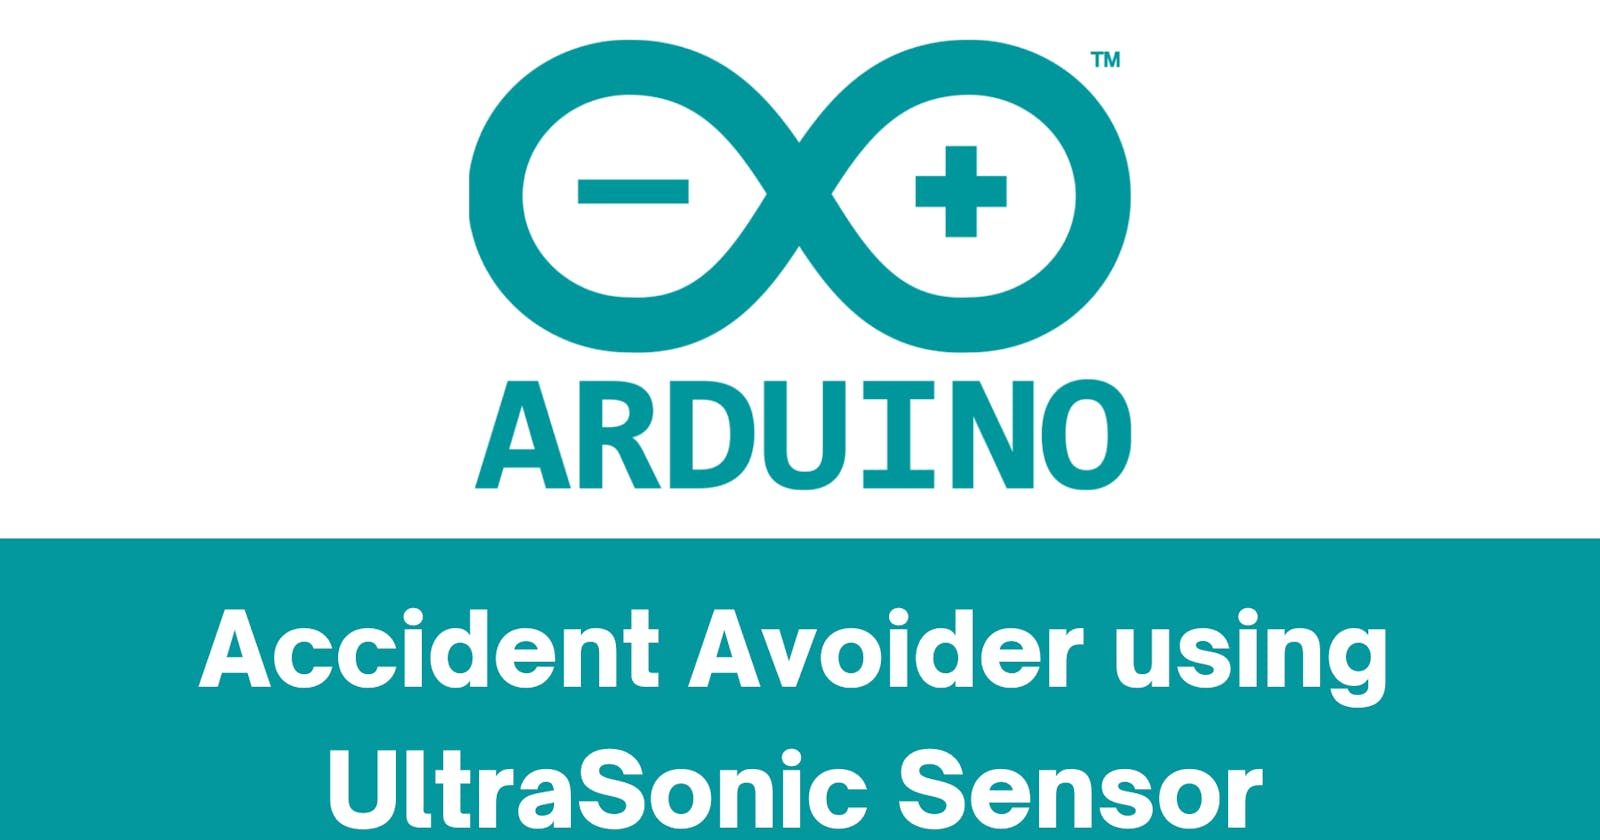 Accident Avoider Robot using Ultrasonic sensor